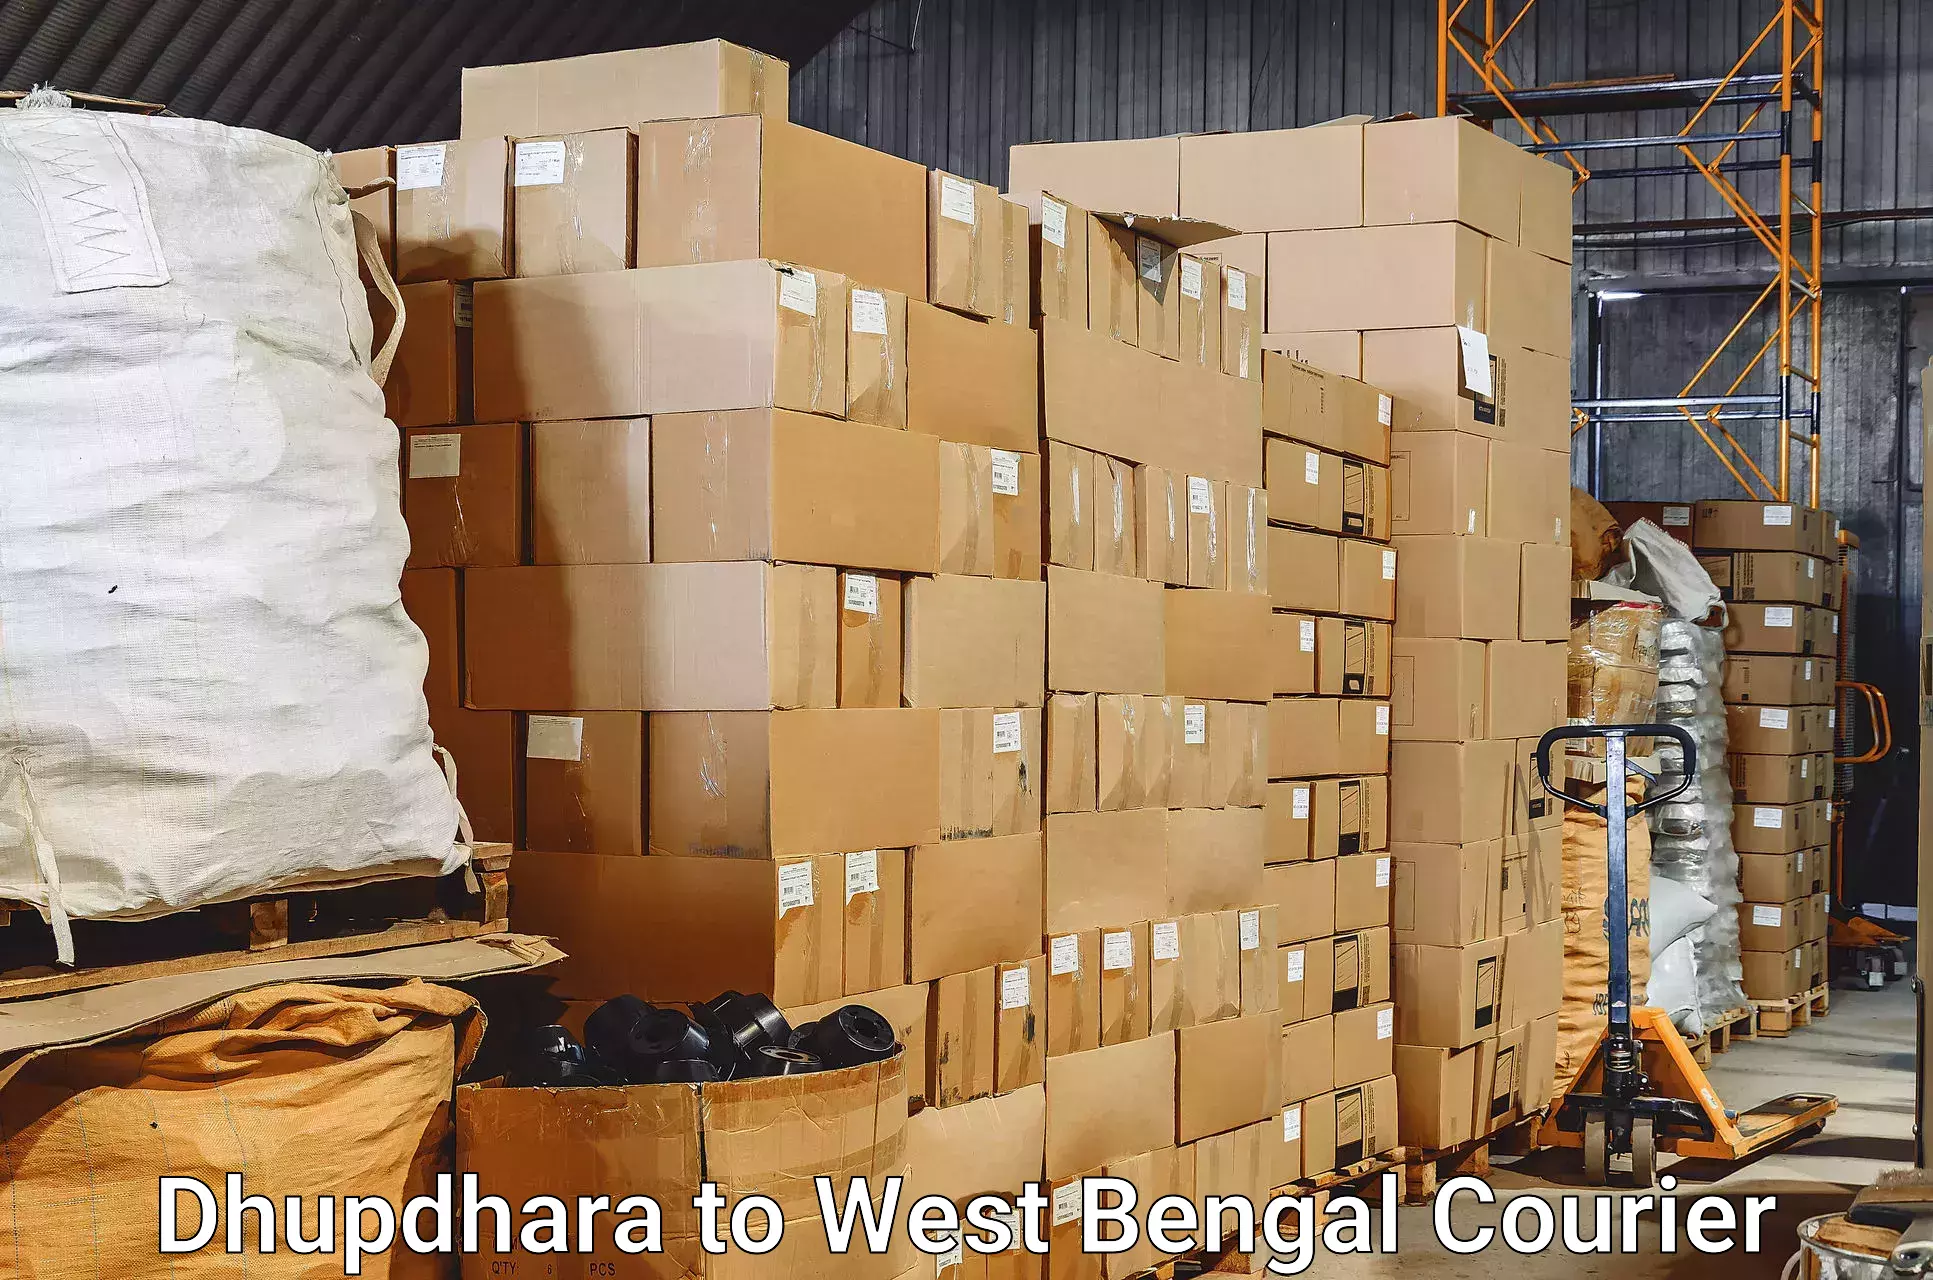 Baggage transport management Dhupdhara to Hingalganj